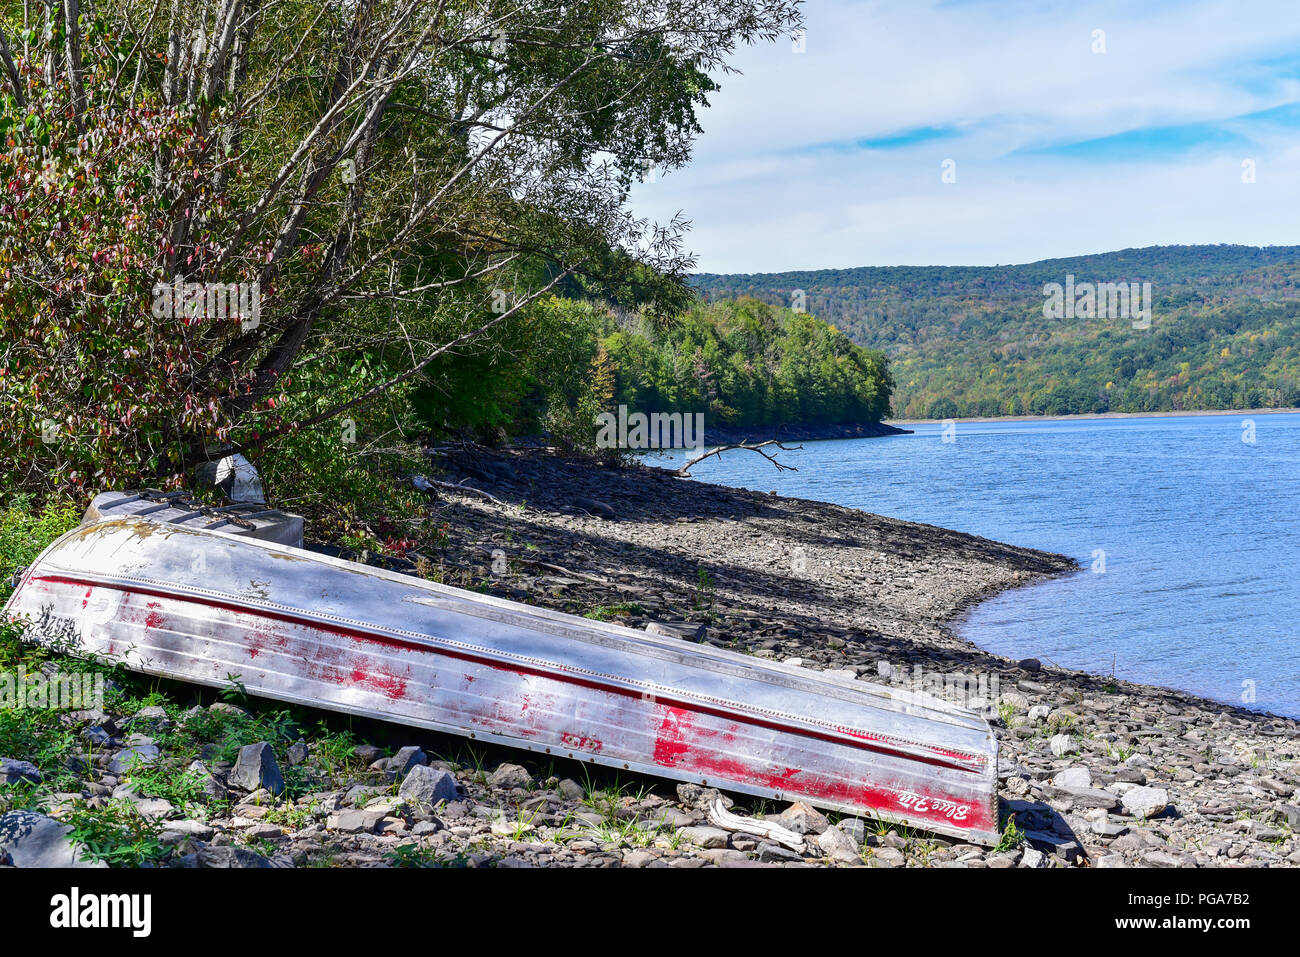 Vieux bateau renversé à côté d'un lac dans les montagnes Catskill, New York, USA Banque D'Images